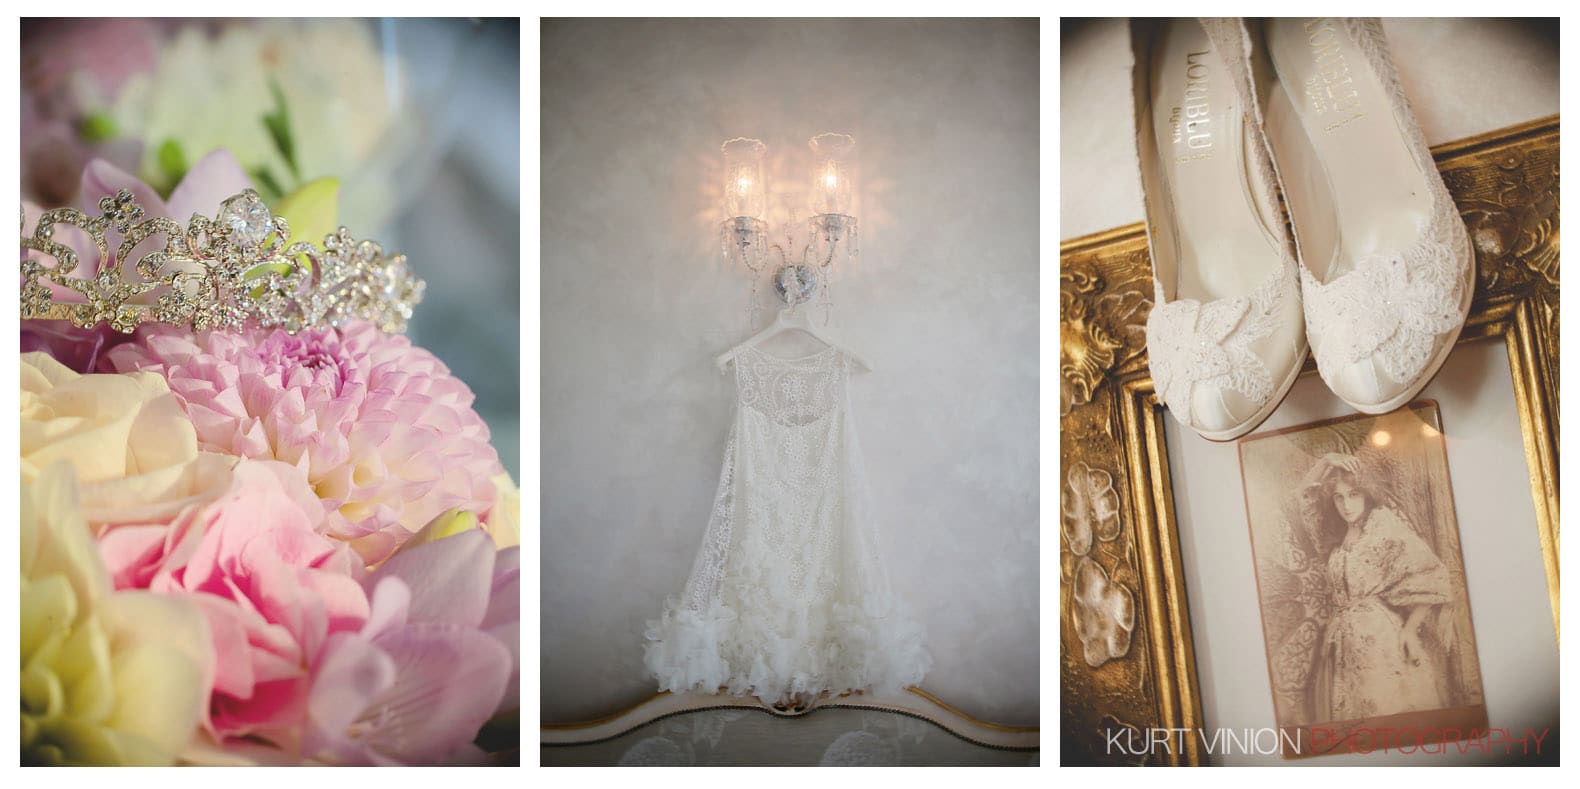 Chateau Mcely wedding / Ludmilla & Sergey wedding photography